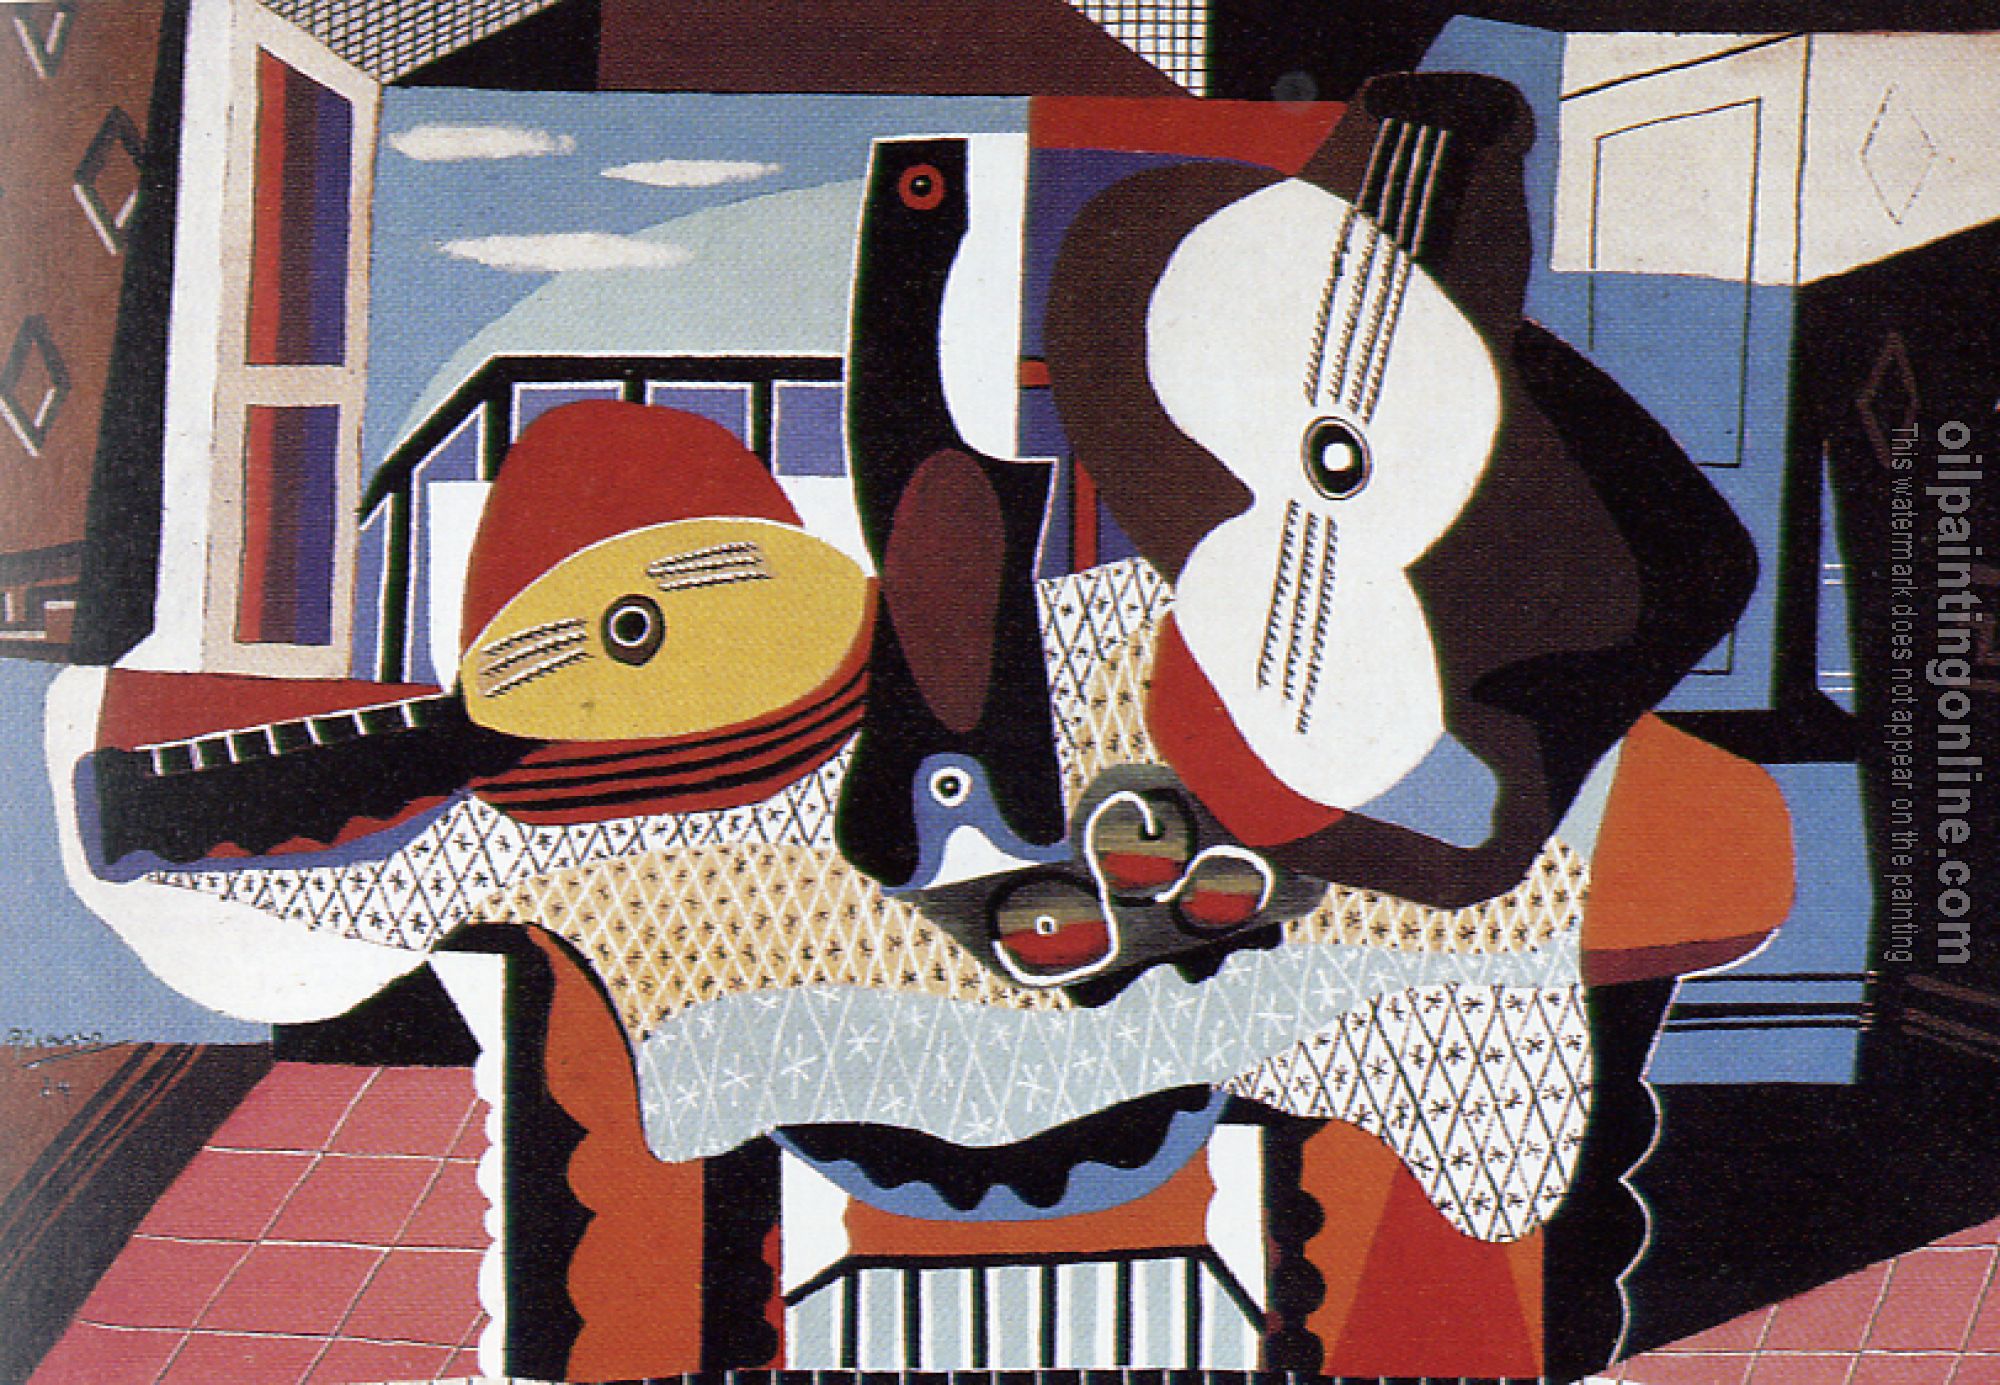 Picasso, Pablo - mandolin and guitar